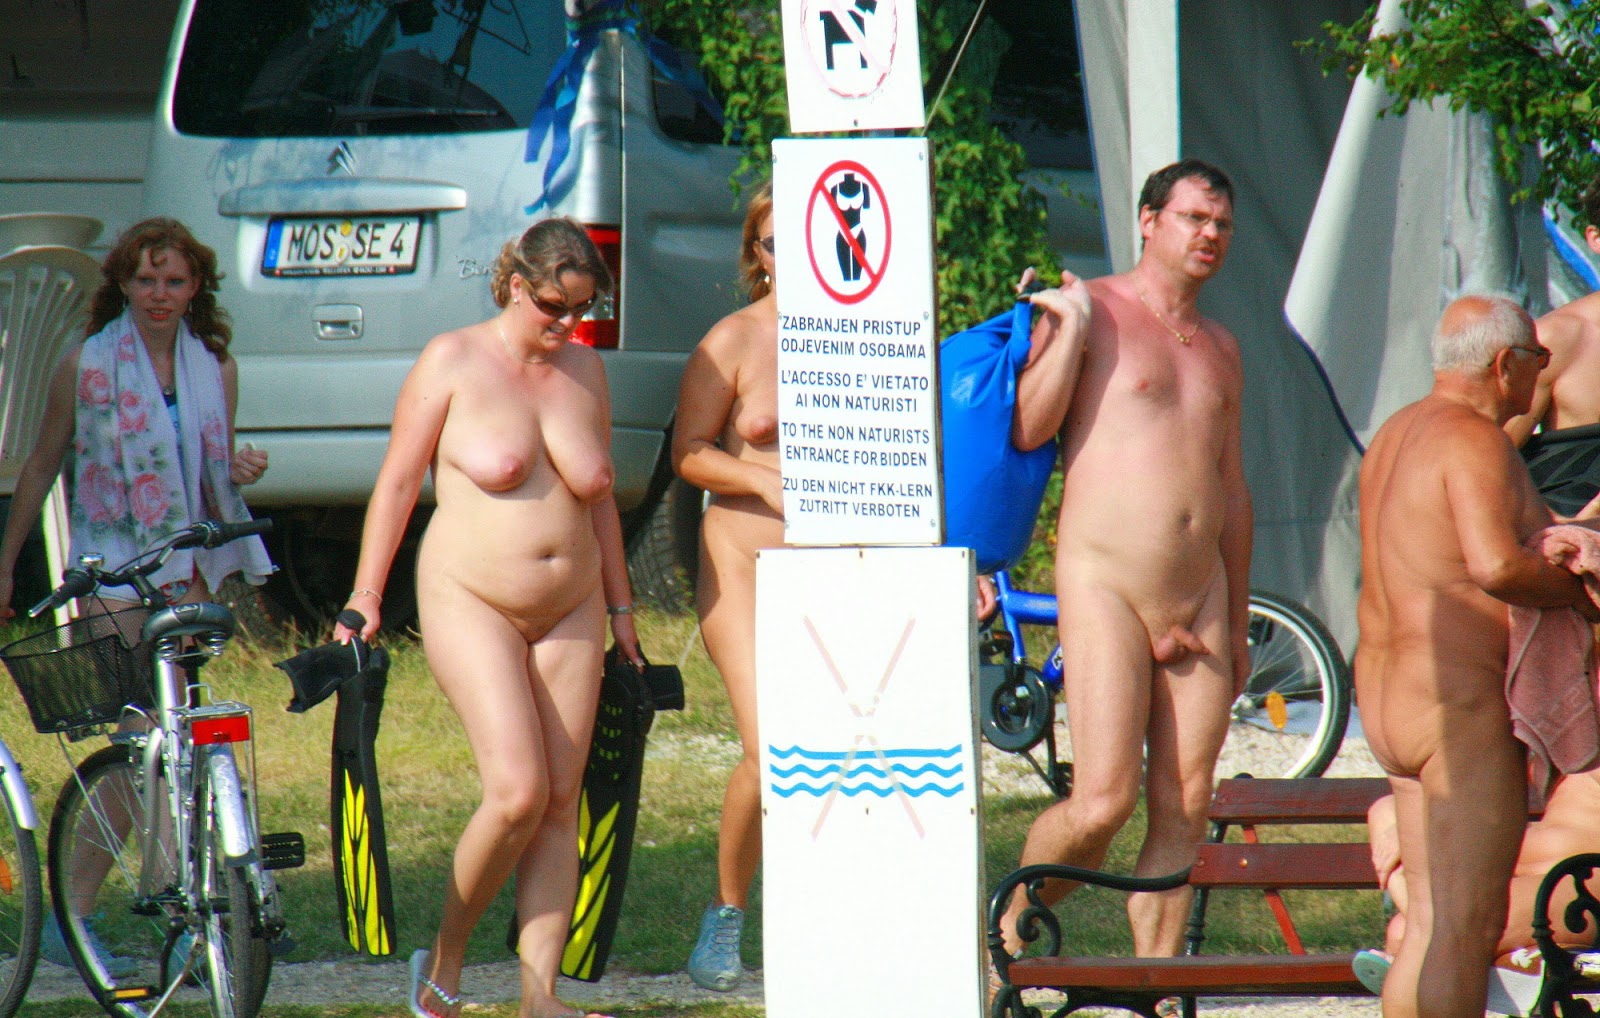 Family nudist camp photos 🔥 Фото Чешских Семейных Нудистов Н